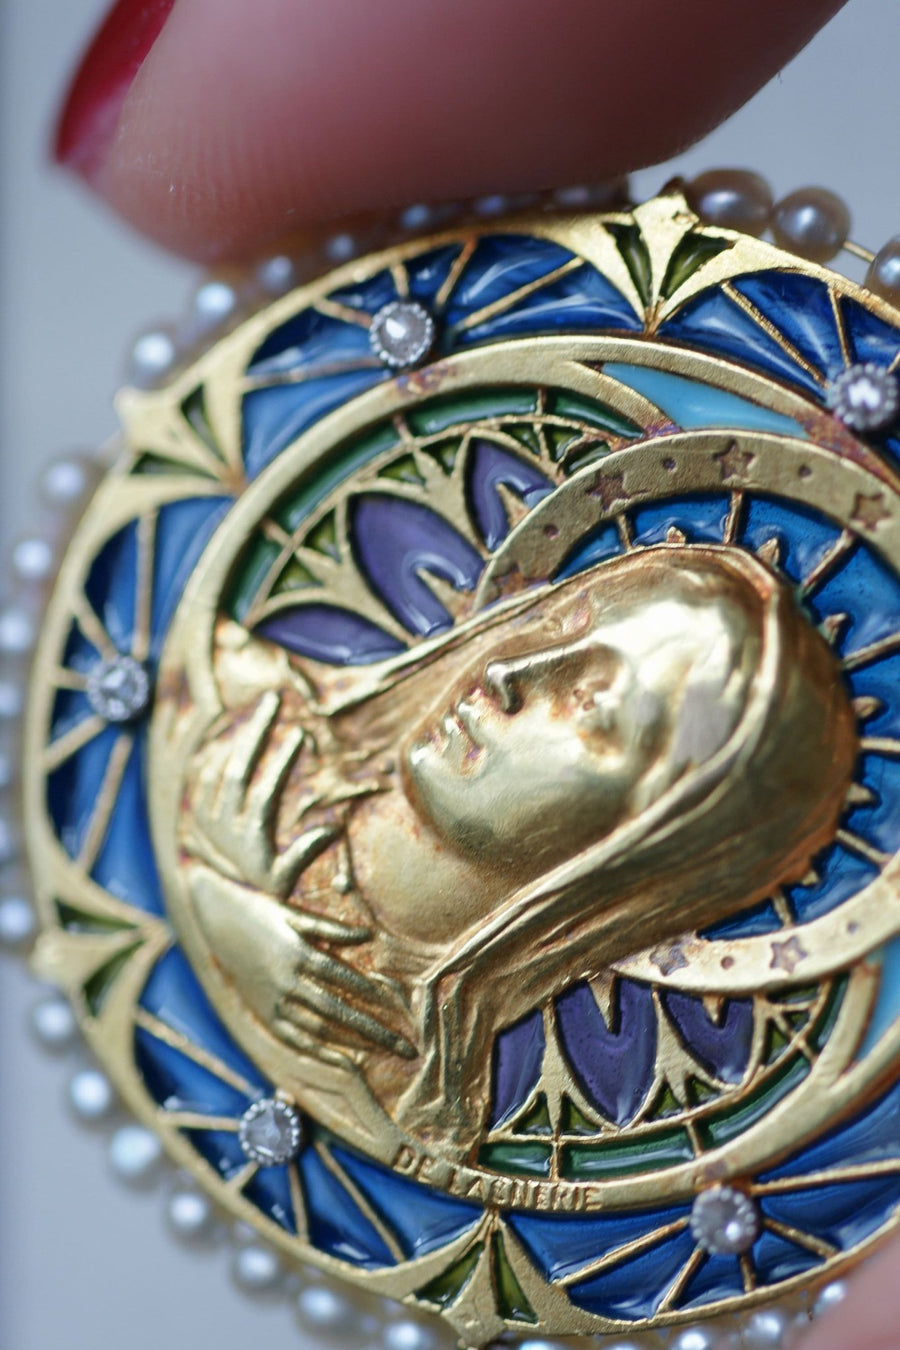 Médaille Vierge Marie émail plique à jour, perles et diamants - Galerie Pénélope